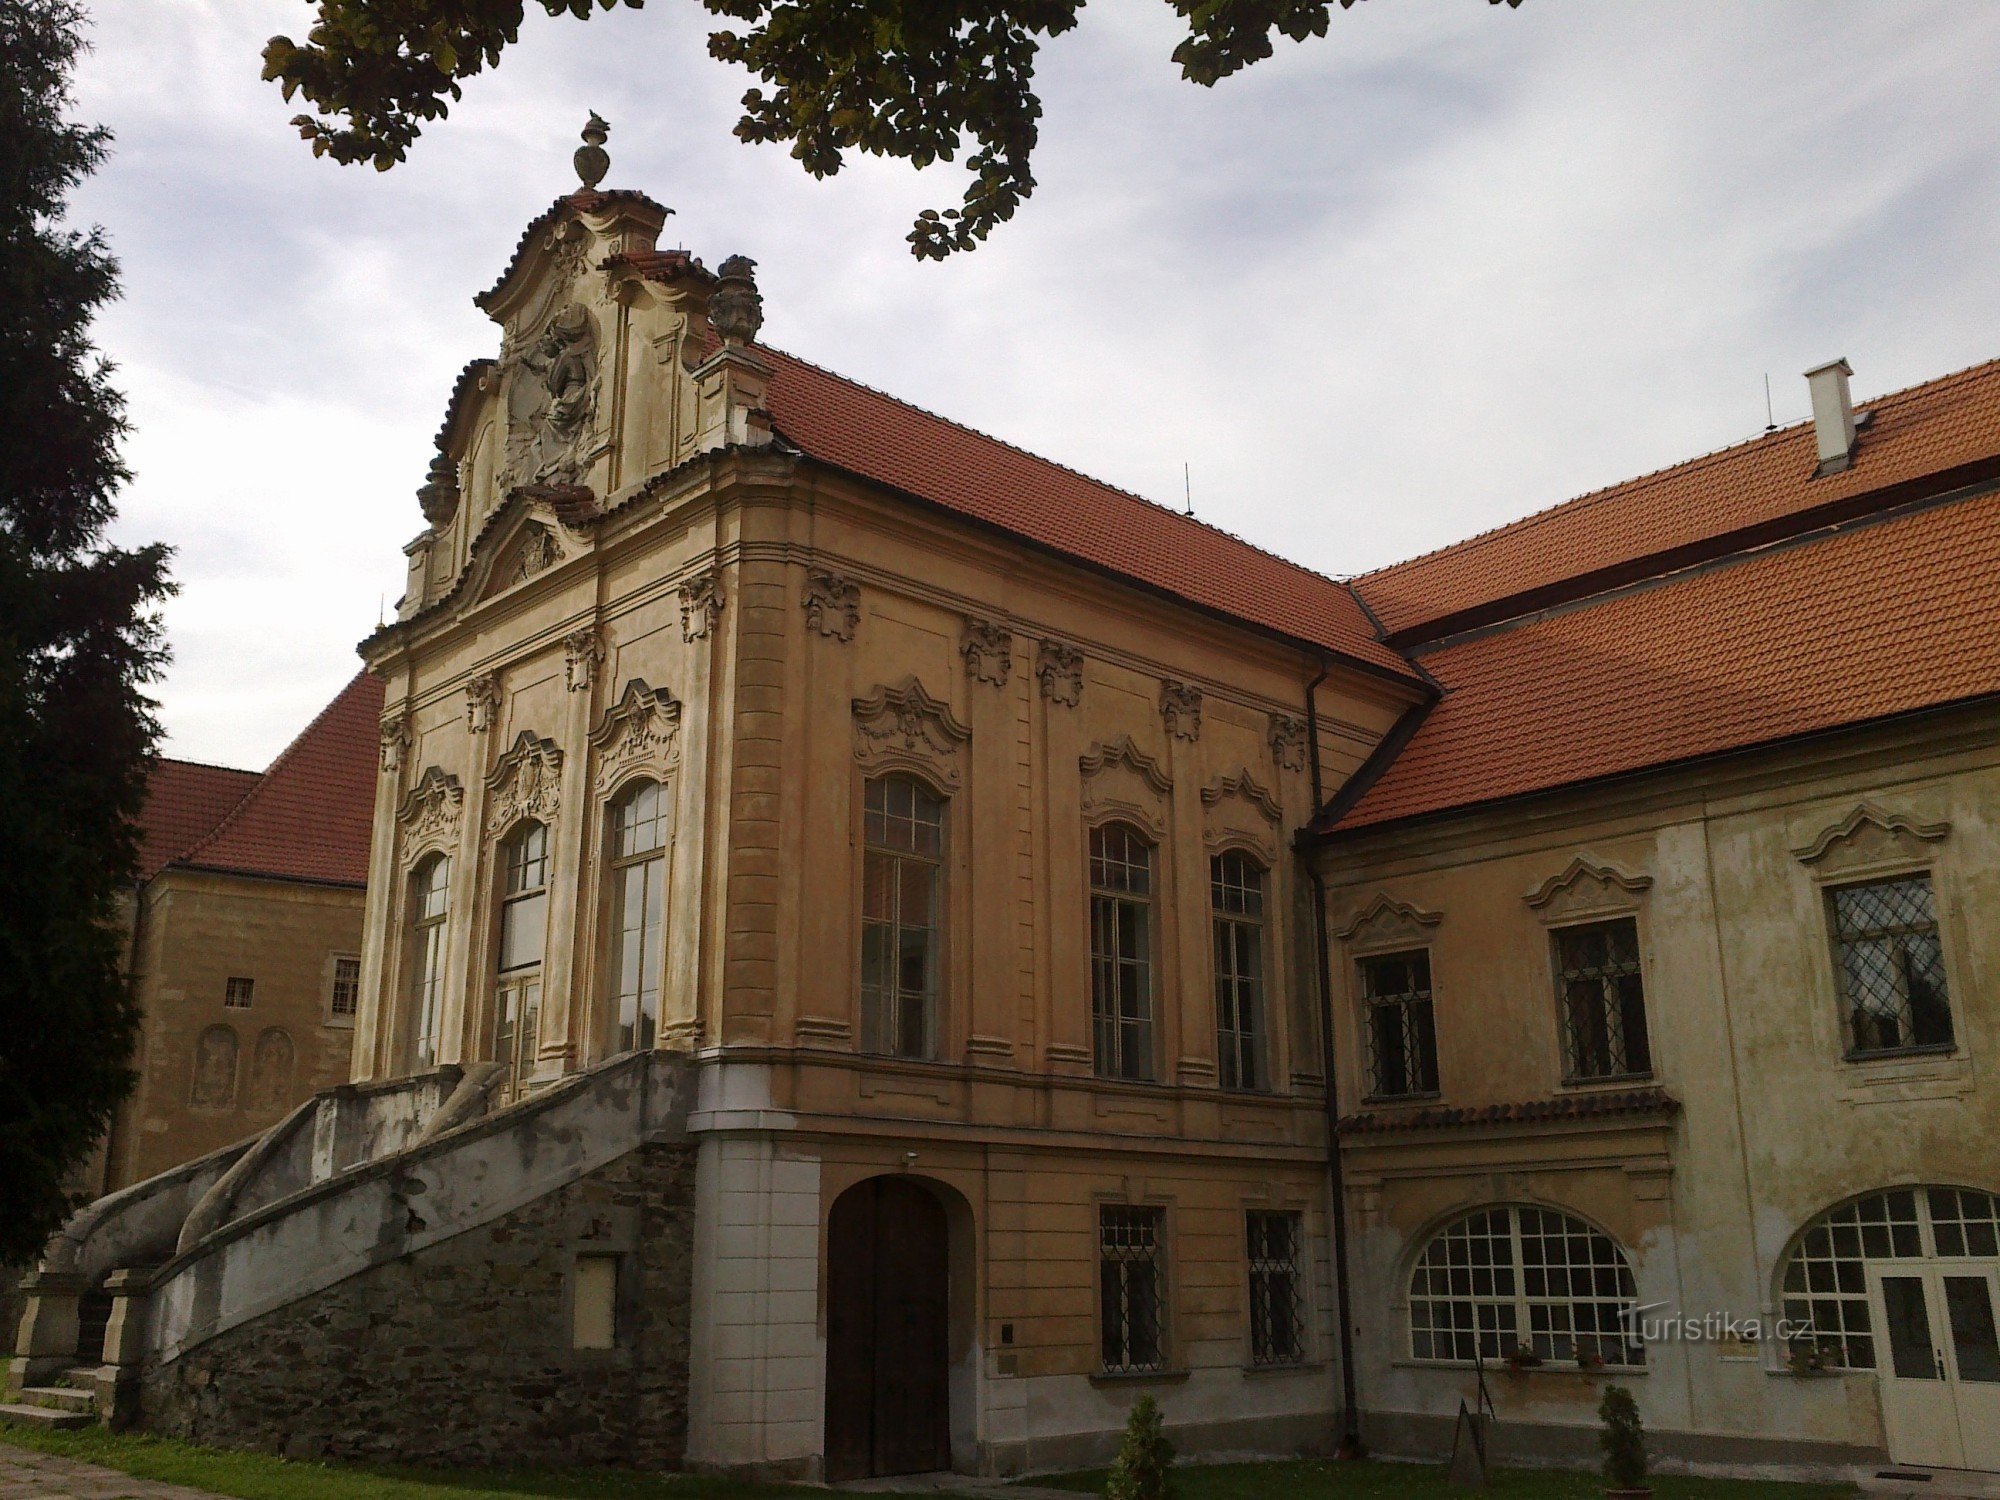 Mosteiro de Želiv.